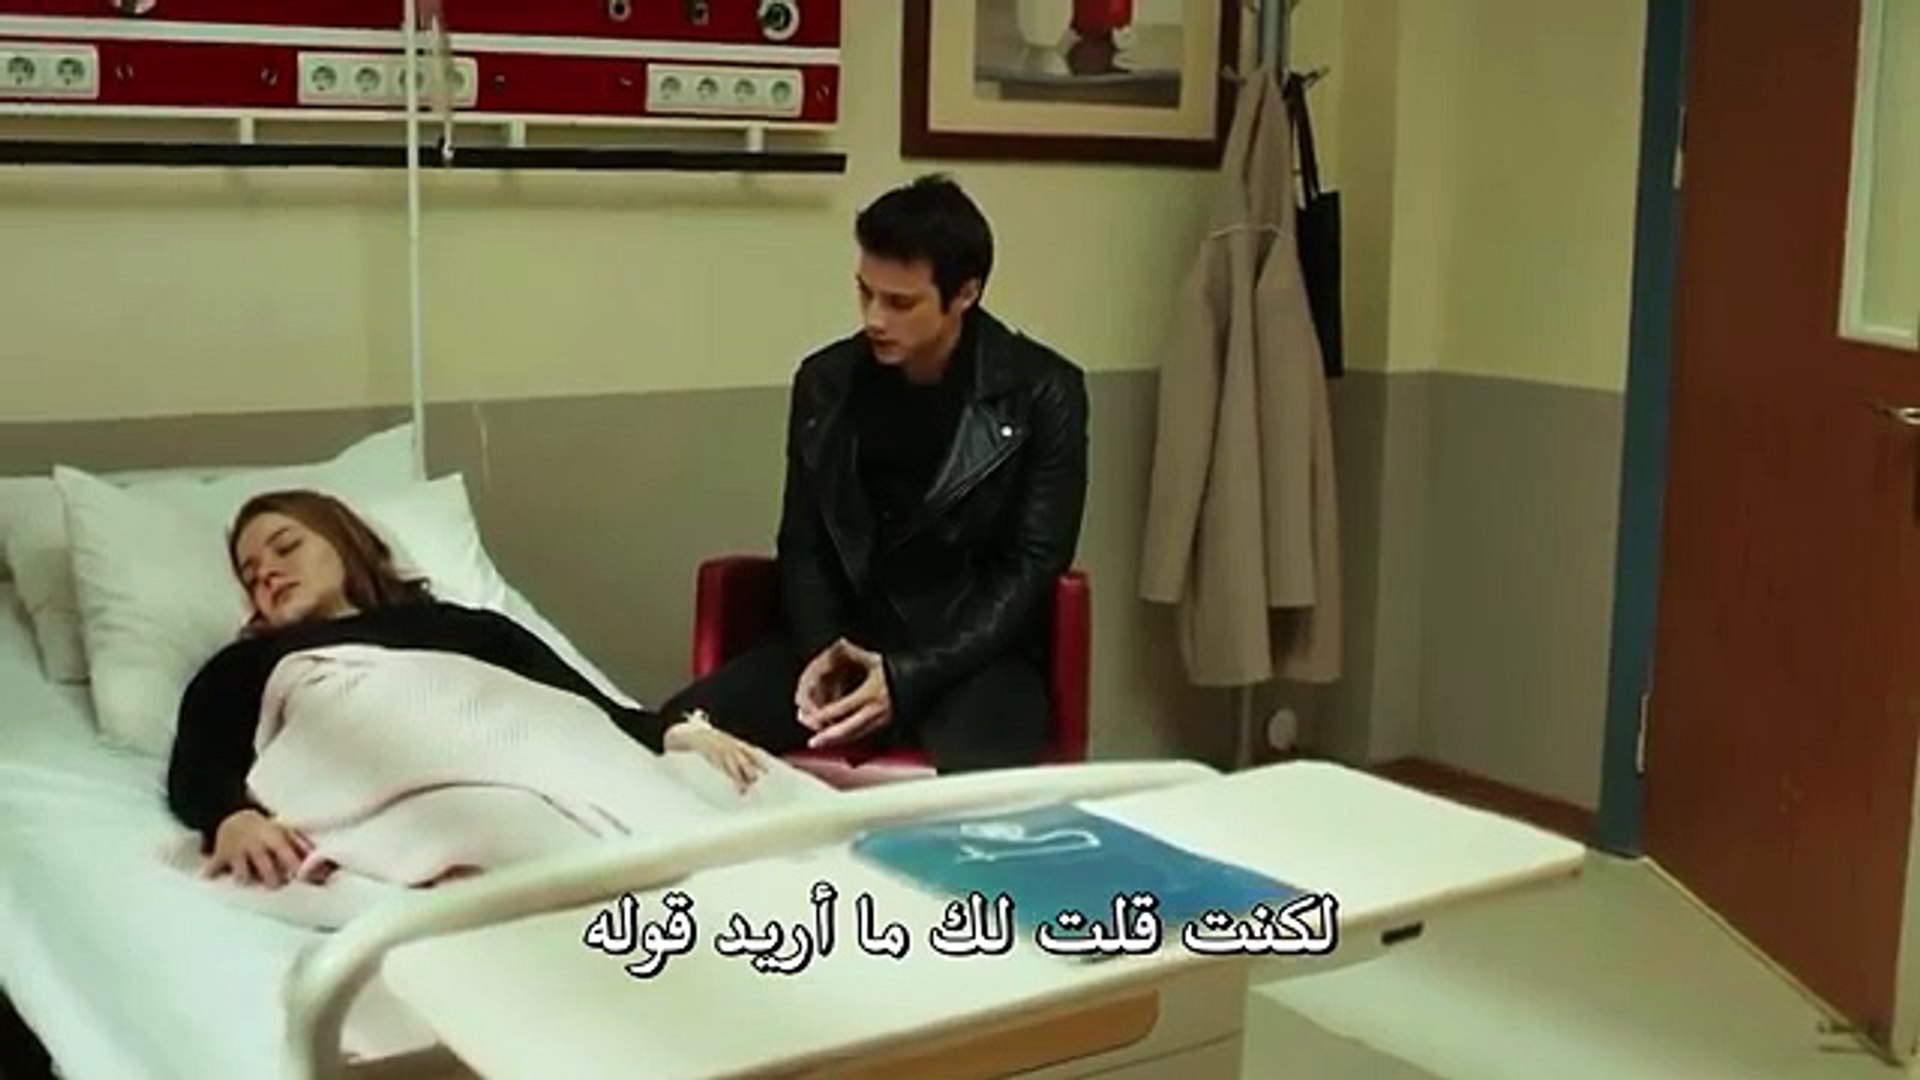 مسلسل لتر من الدموع الحلقة 7 مترجم للعربية - Vidéo Dailymotion